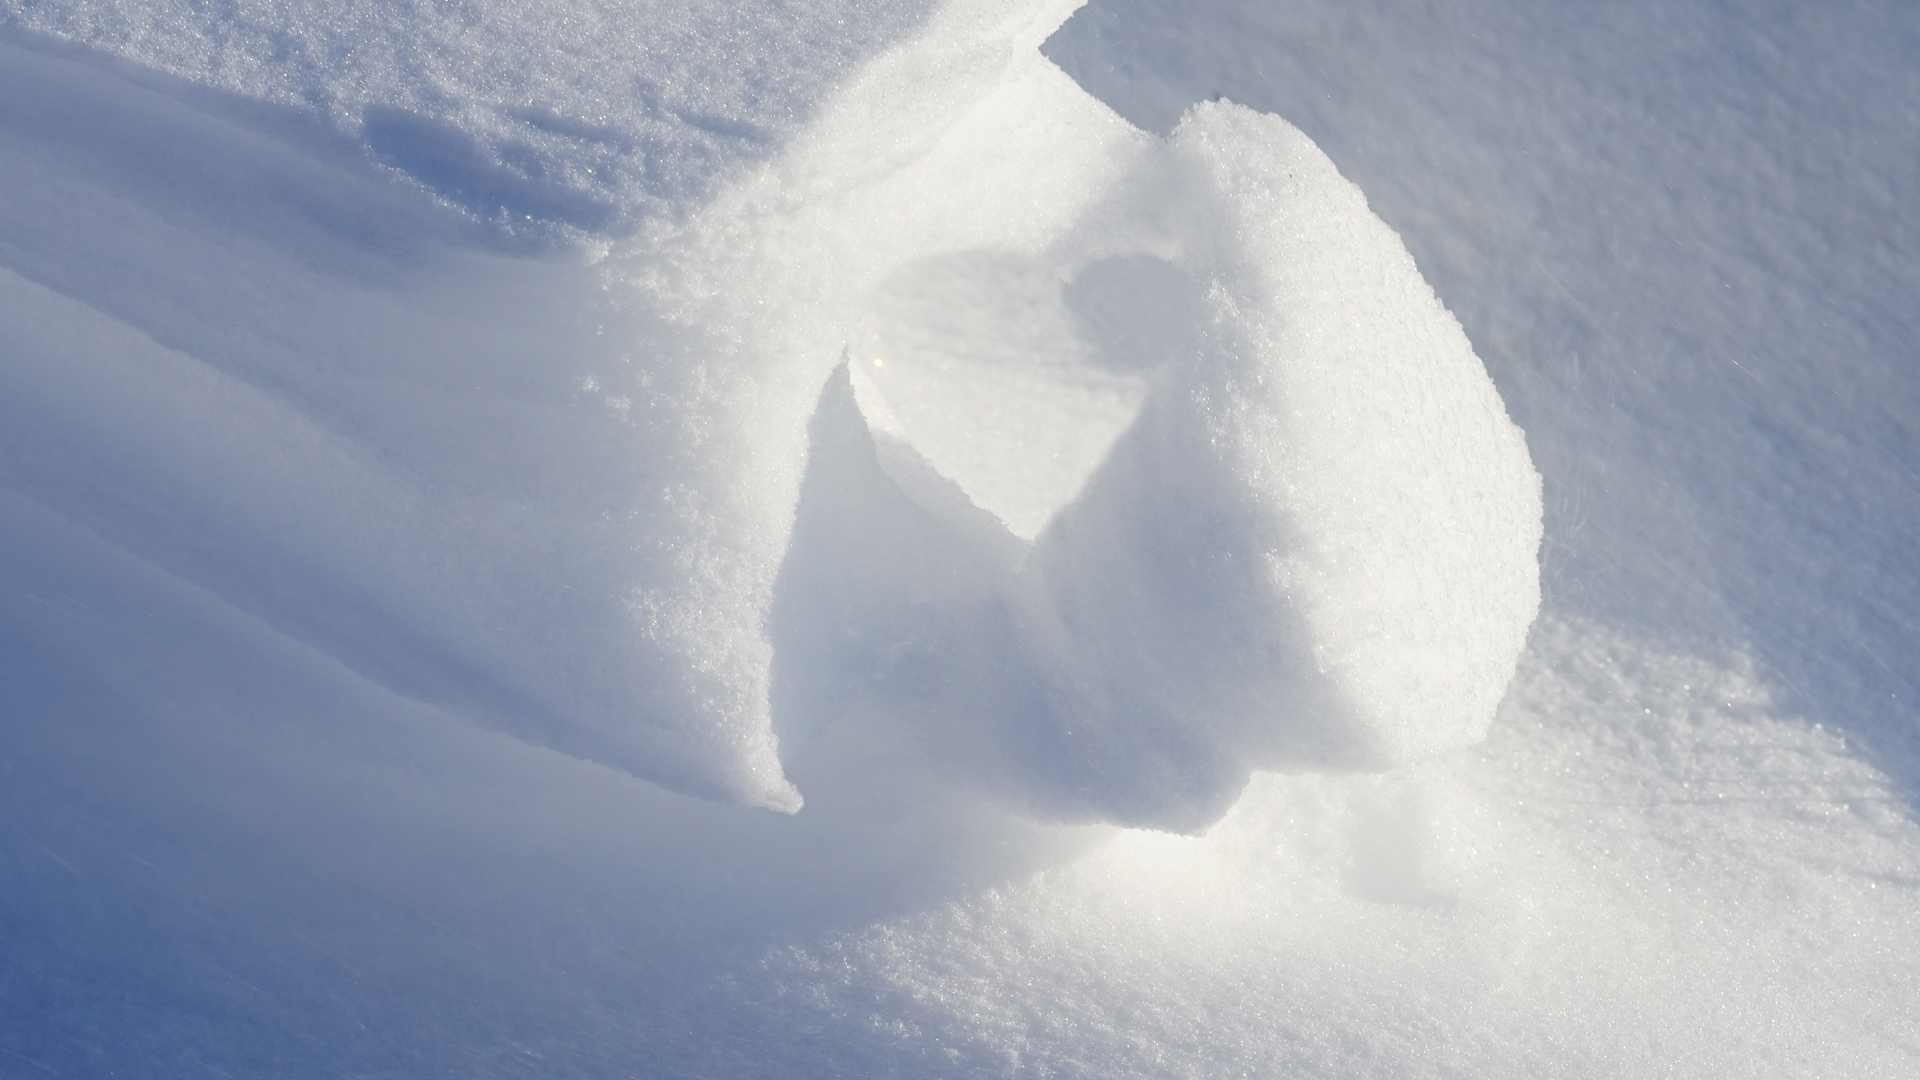 Fotostrecke Schnee Abbildung 30: Liebeserklärung